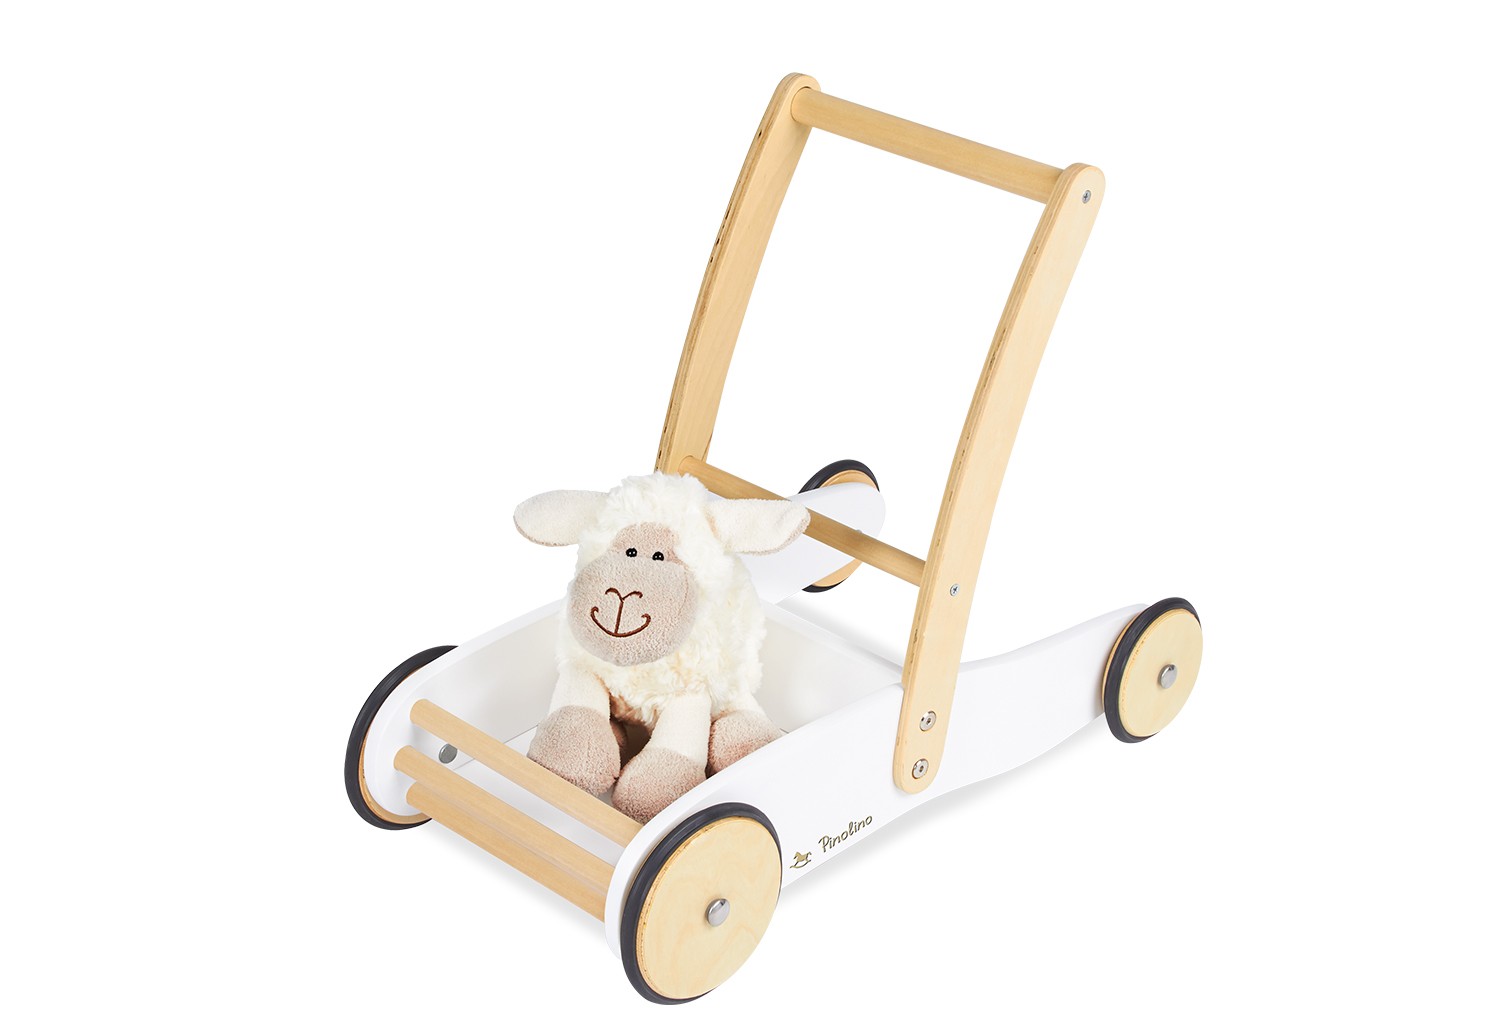 Lauflernwagen ULI | kaufen | günstig Babyzimmer | online und Räume bei Polstermöbel | Lauflernhilfen | Spielzeug